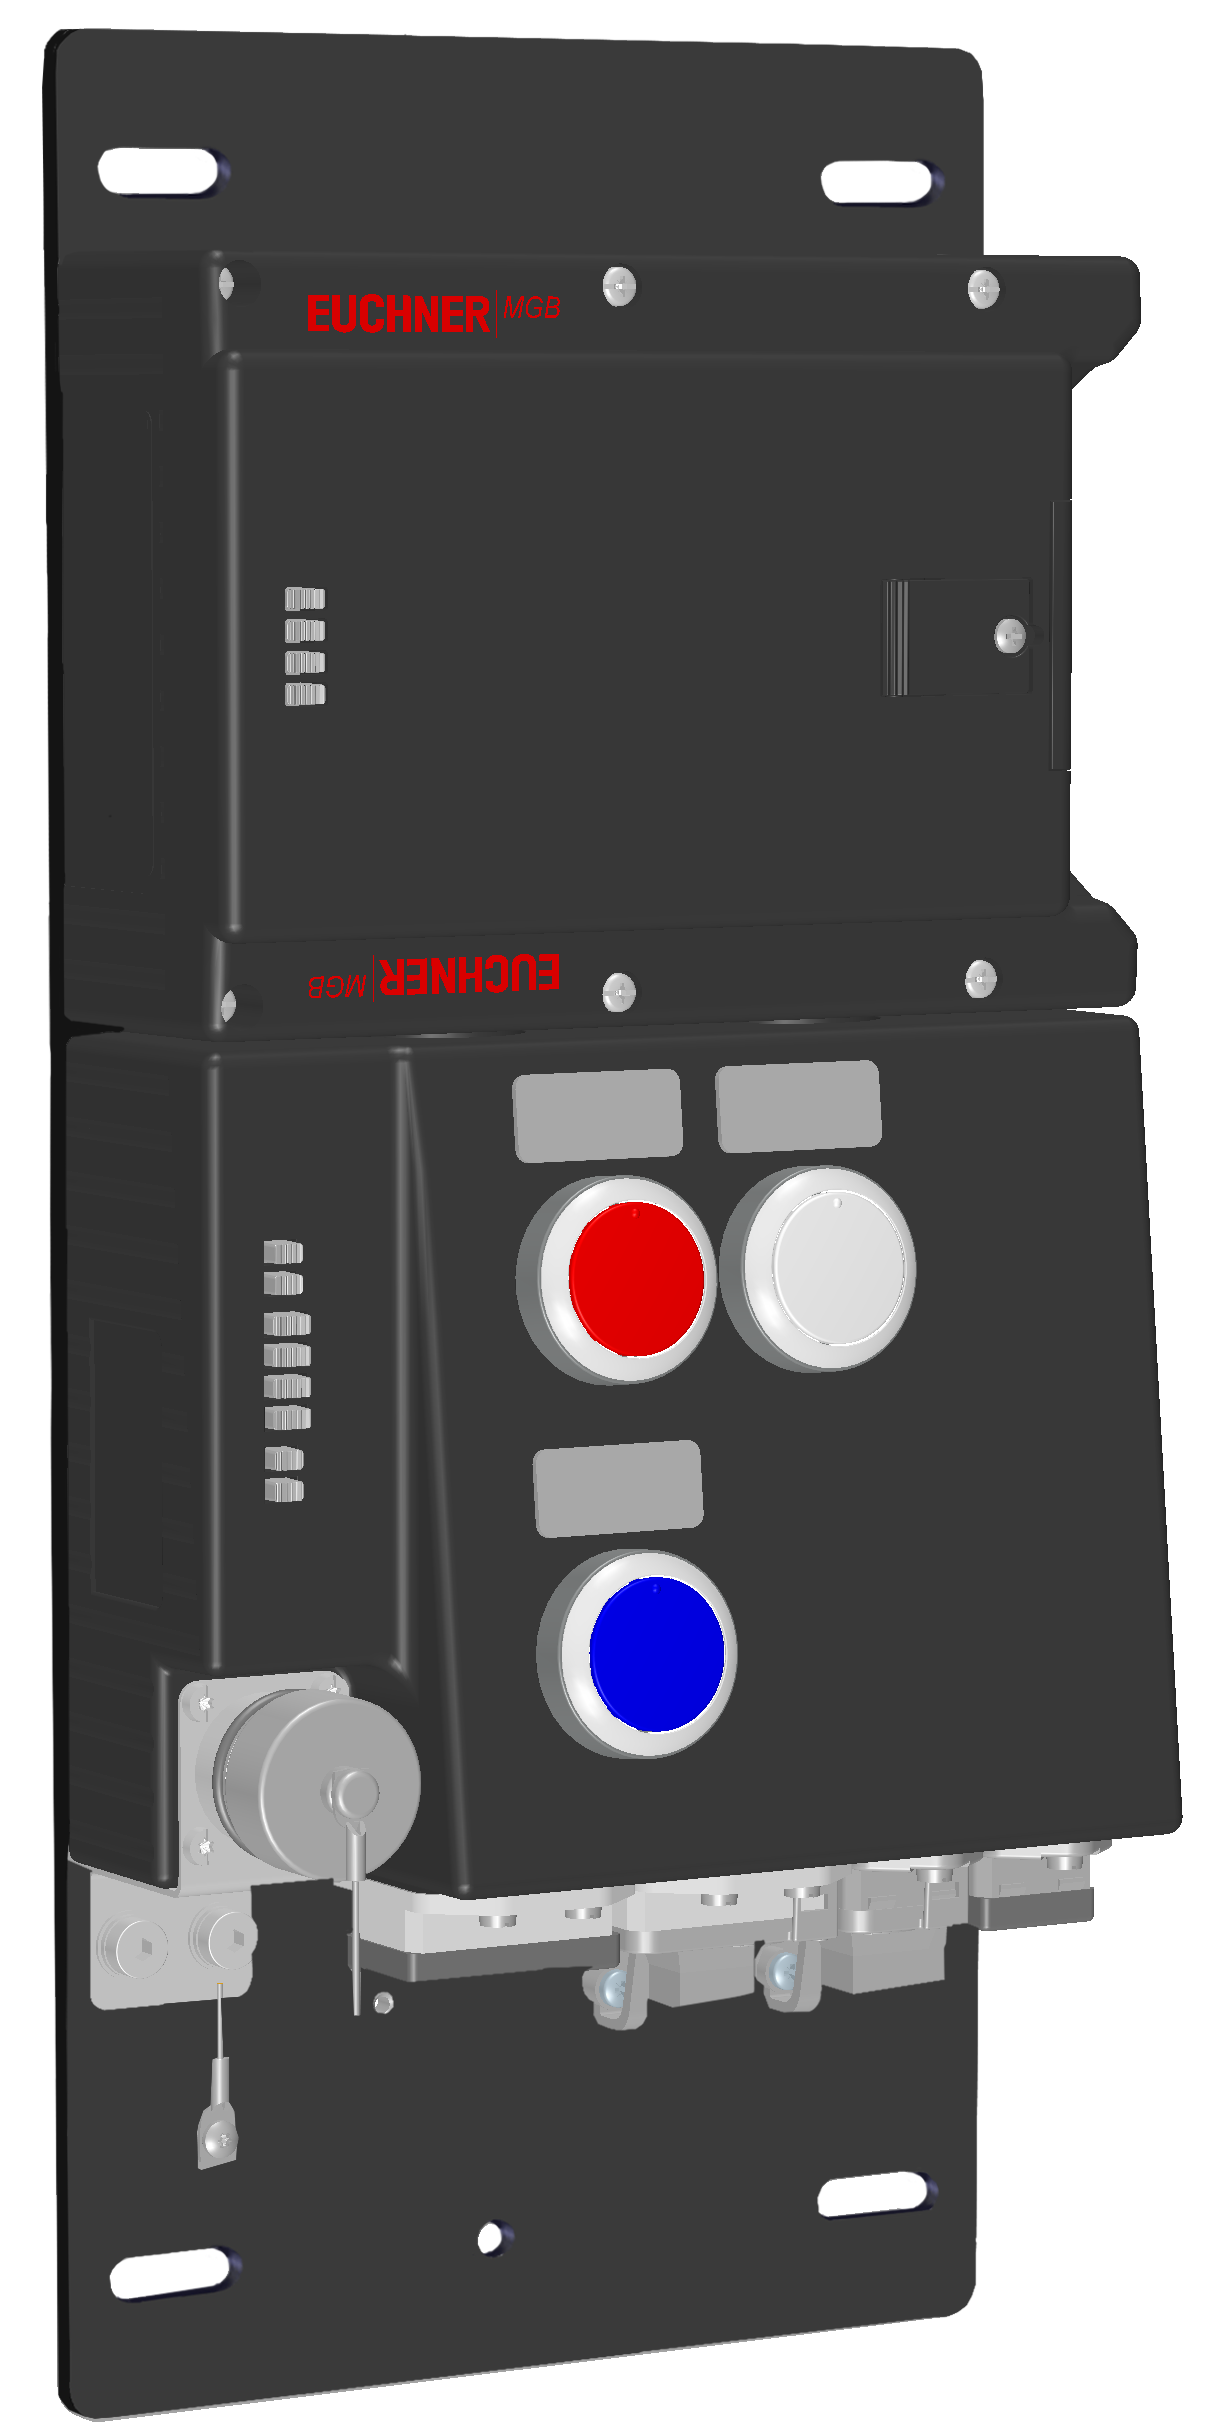 Vyhodnocovací moduly s jištěním ochranného krytu MGB-L2B-PNC-R-114398  (Obj. č. 114398)